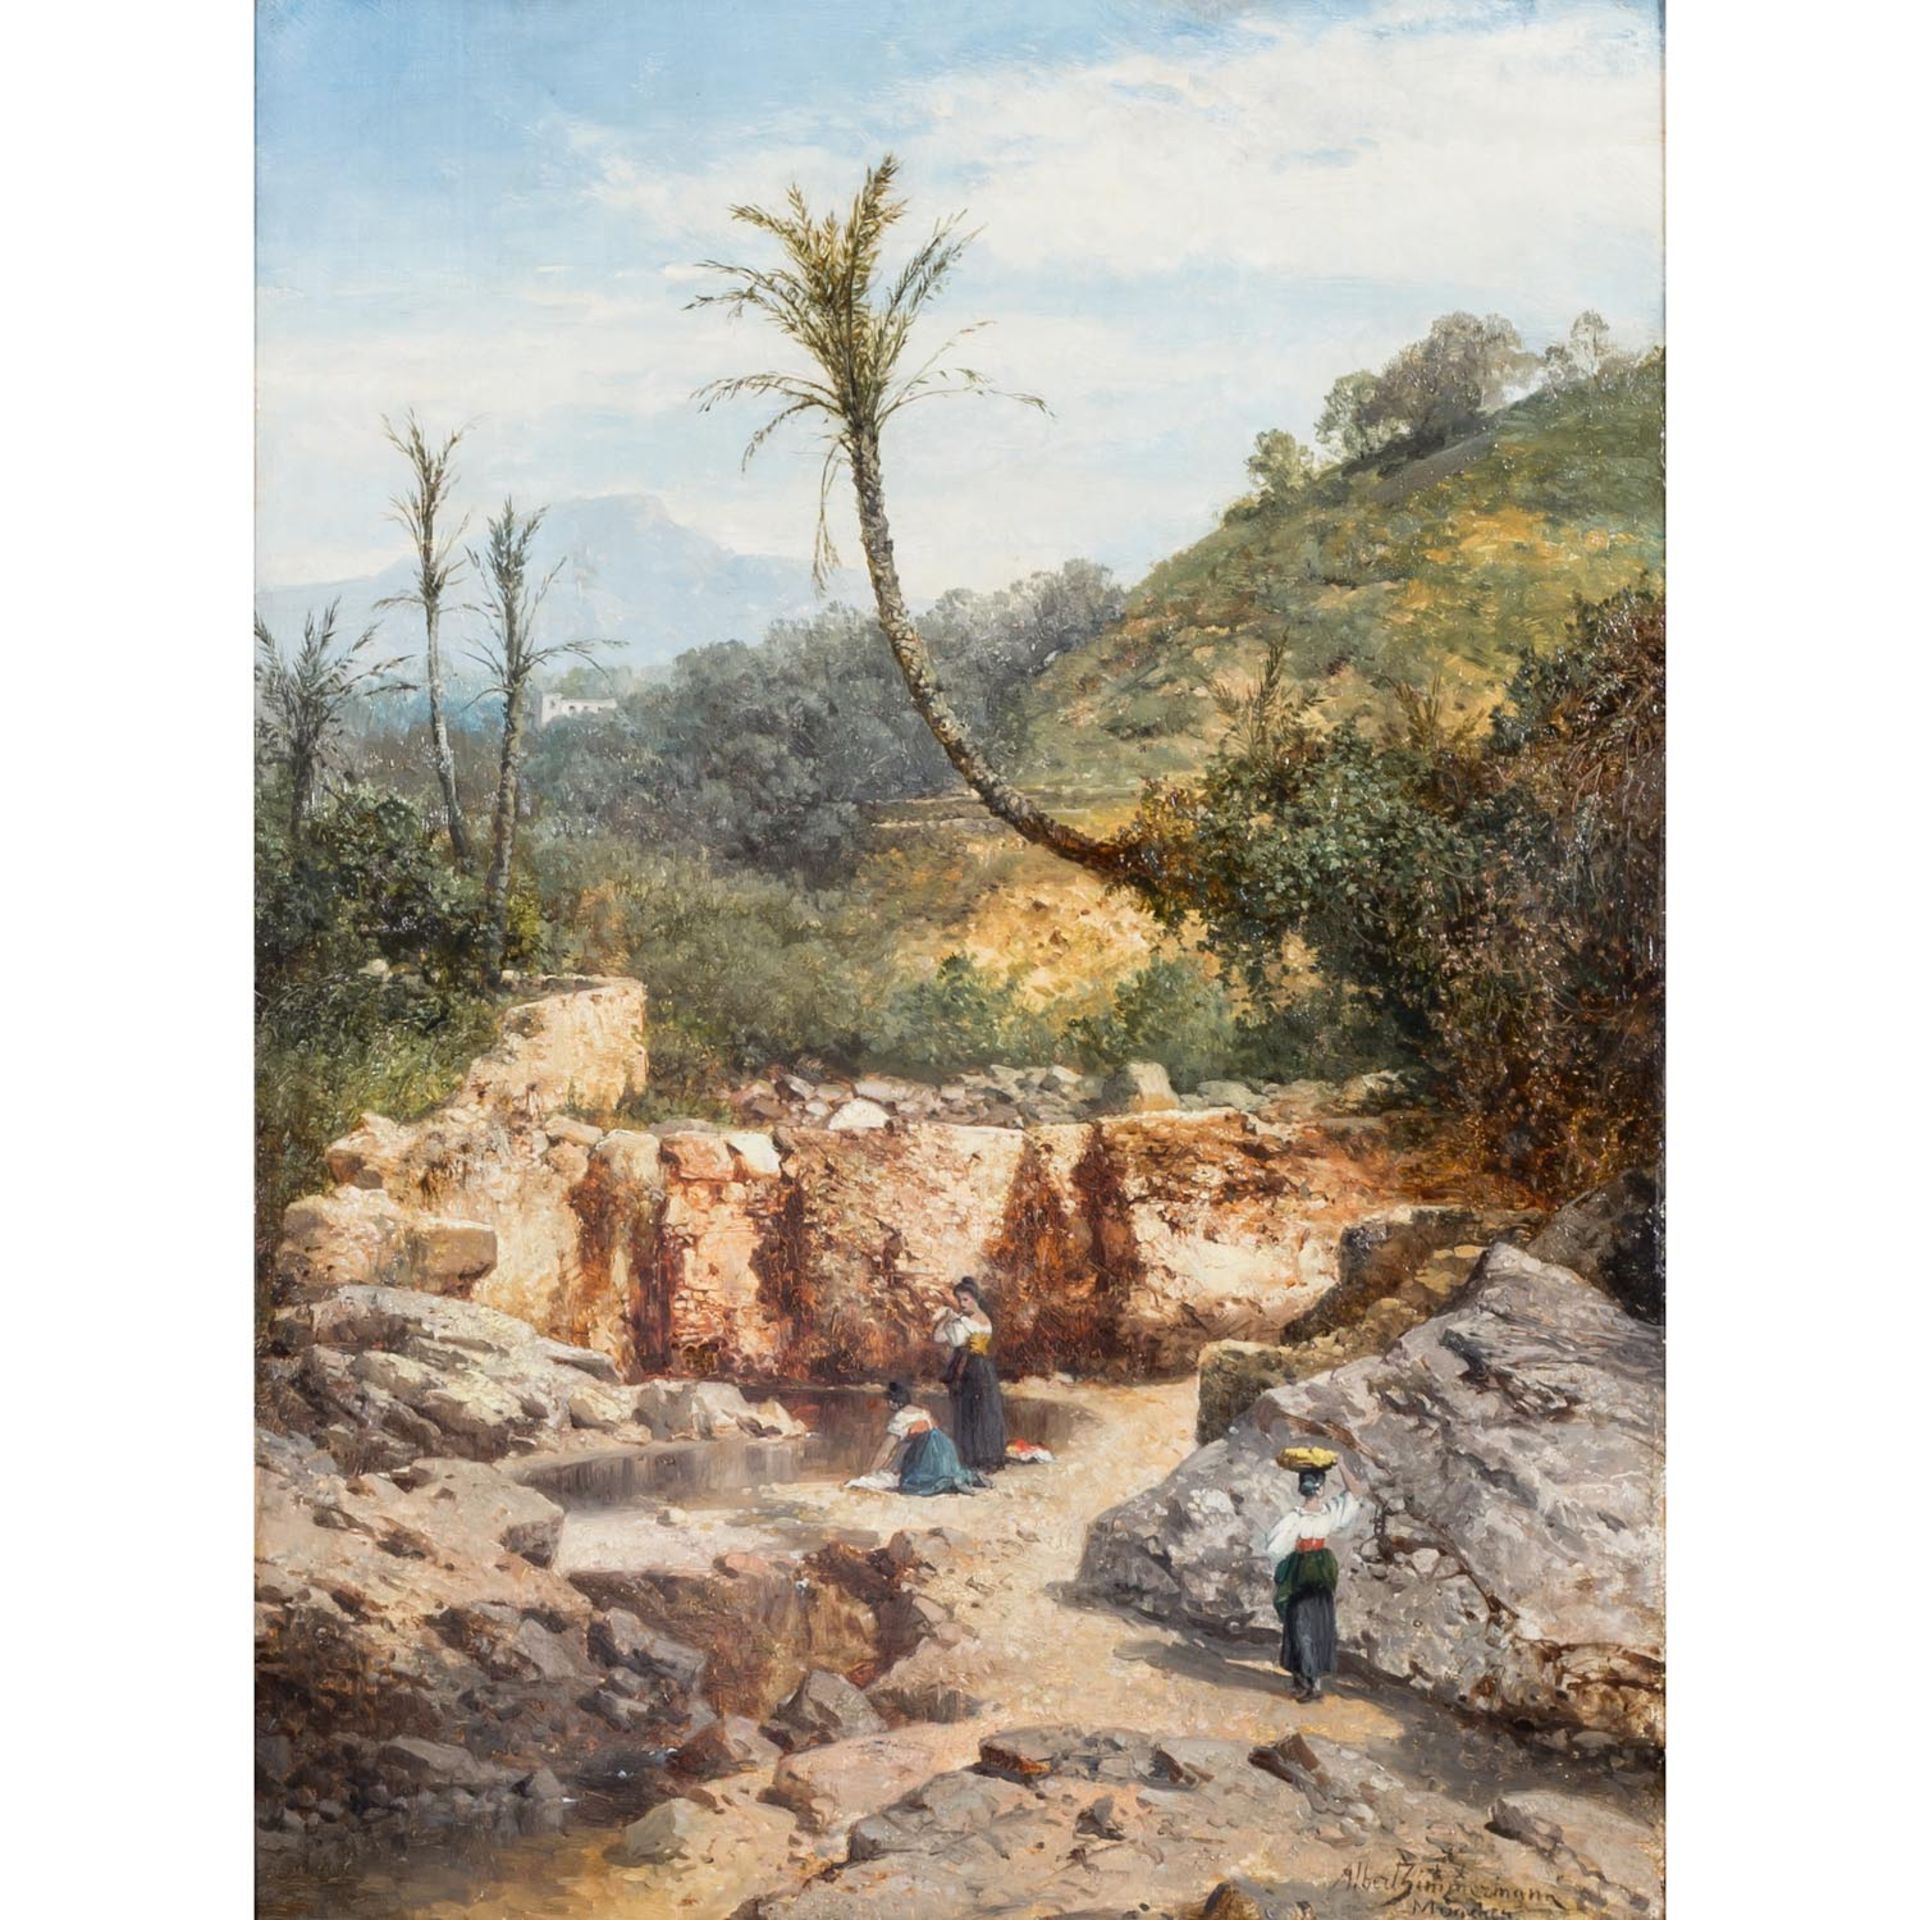 ZIMMERMANN, ALBERT (1808-1888), "Wäscherinnen in mediterraner Landschaft mit Palmen",